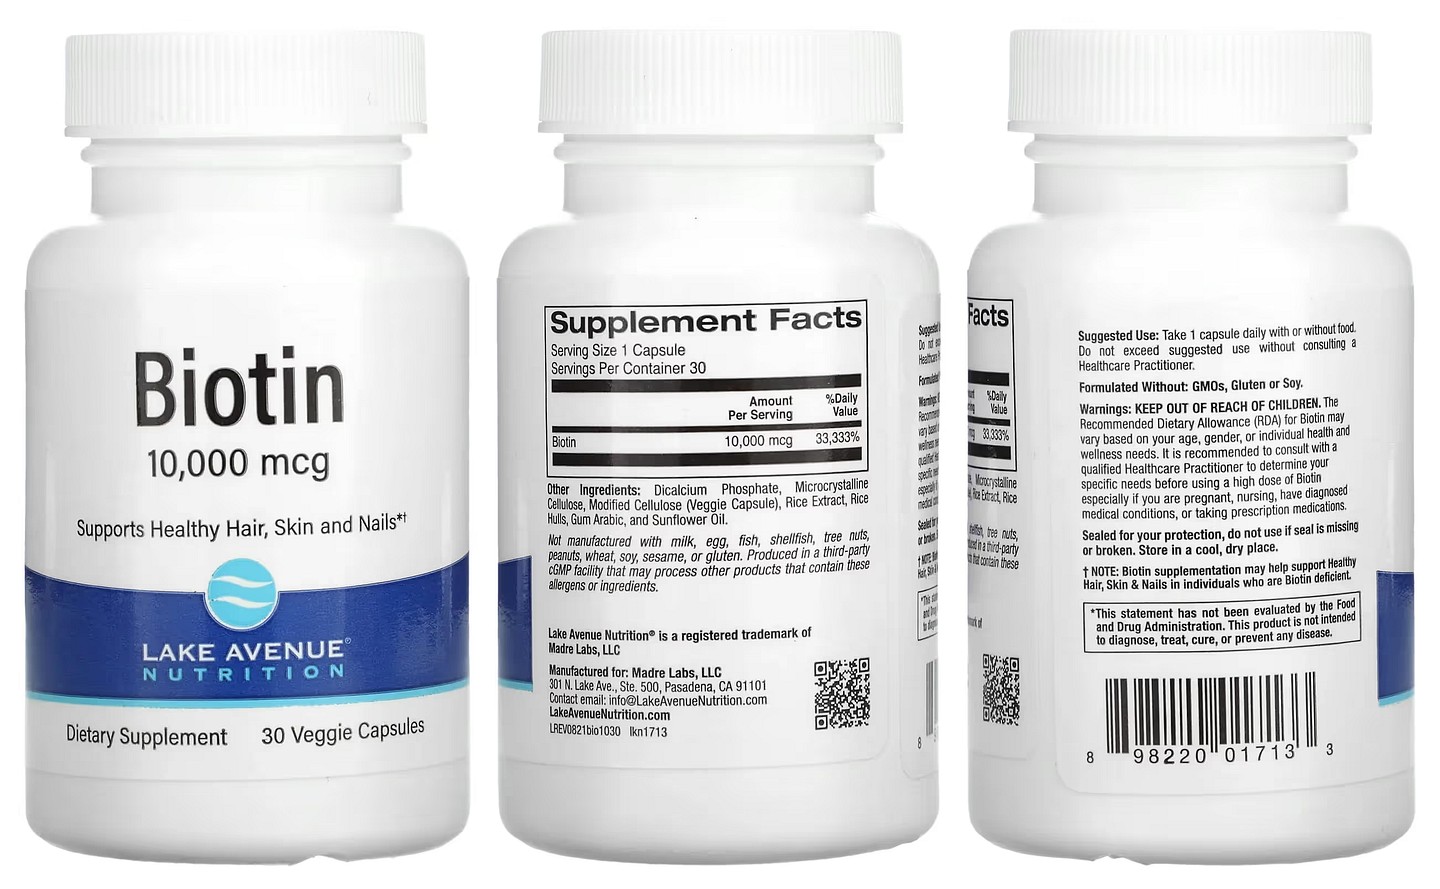 Lake Avenue Nutrition, Biotin packaging